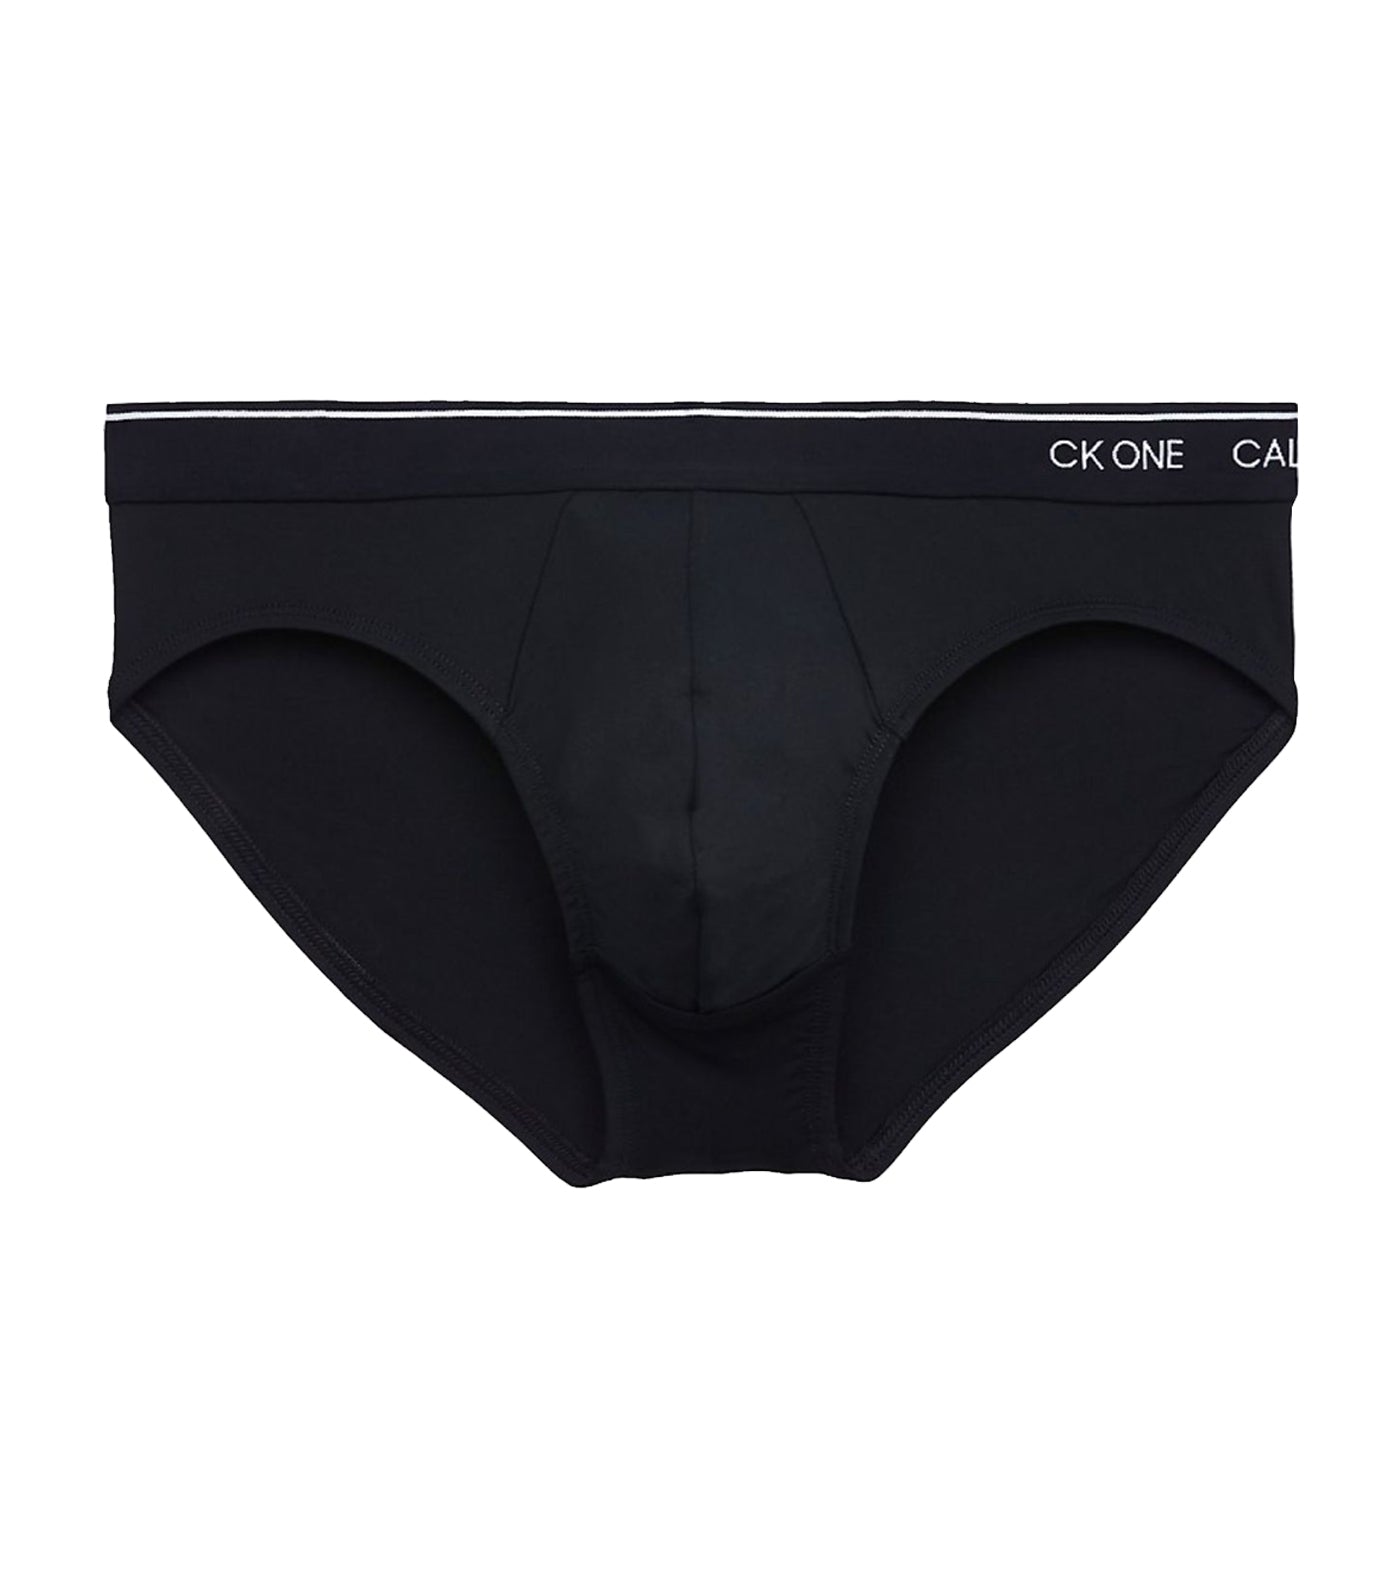 New Calvin Klein CK One Men’s Hip Briefs / Slip . Size XL